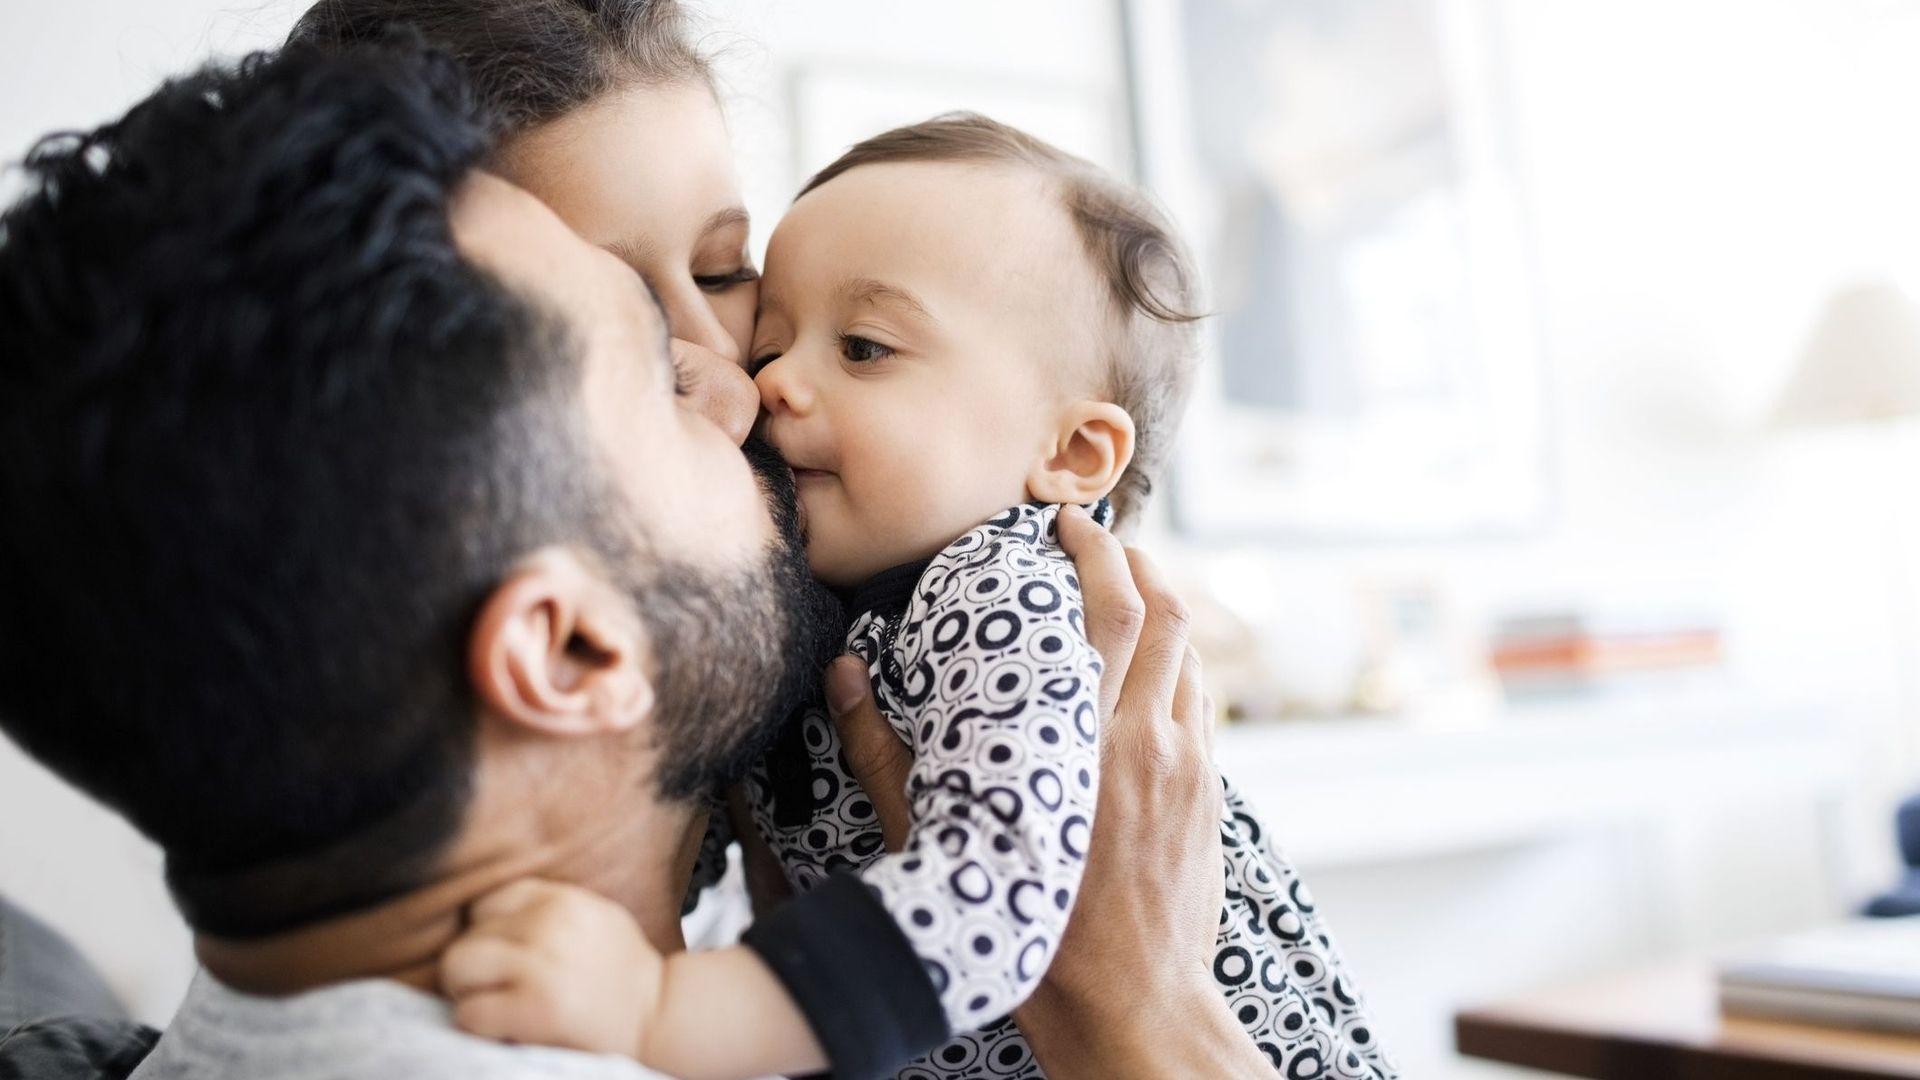 Pour les bébés, échanger sa salive est une preuve de proximité.